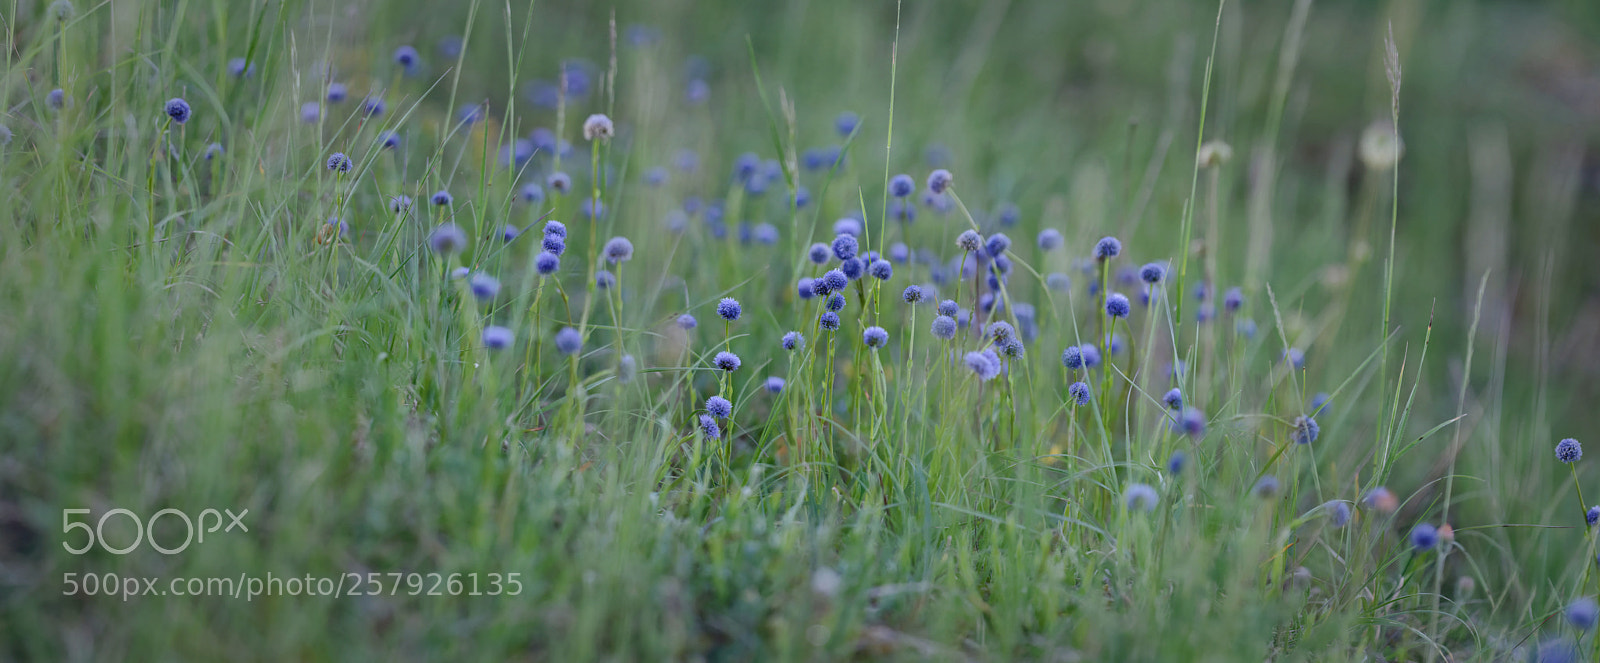 Nikon D7100 sample photo. Troupeau de fleurs bleues photography